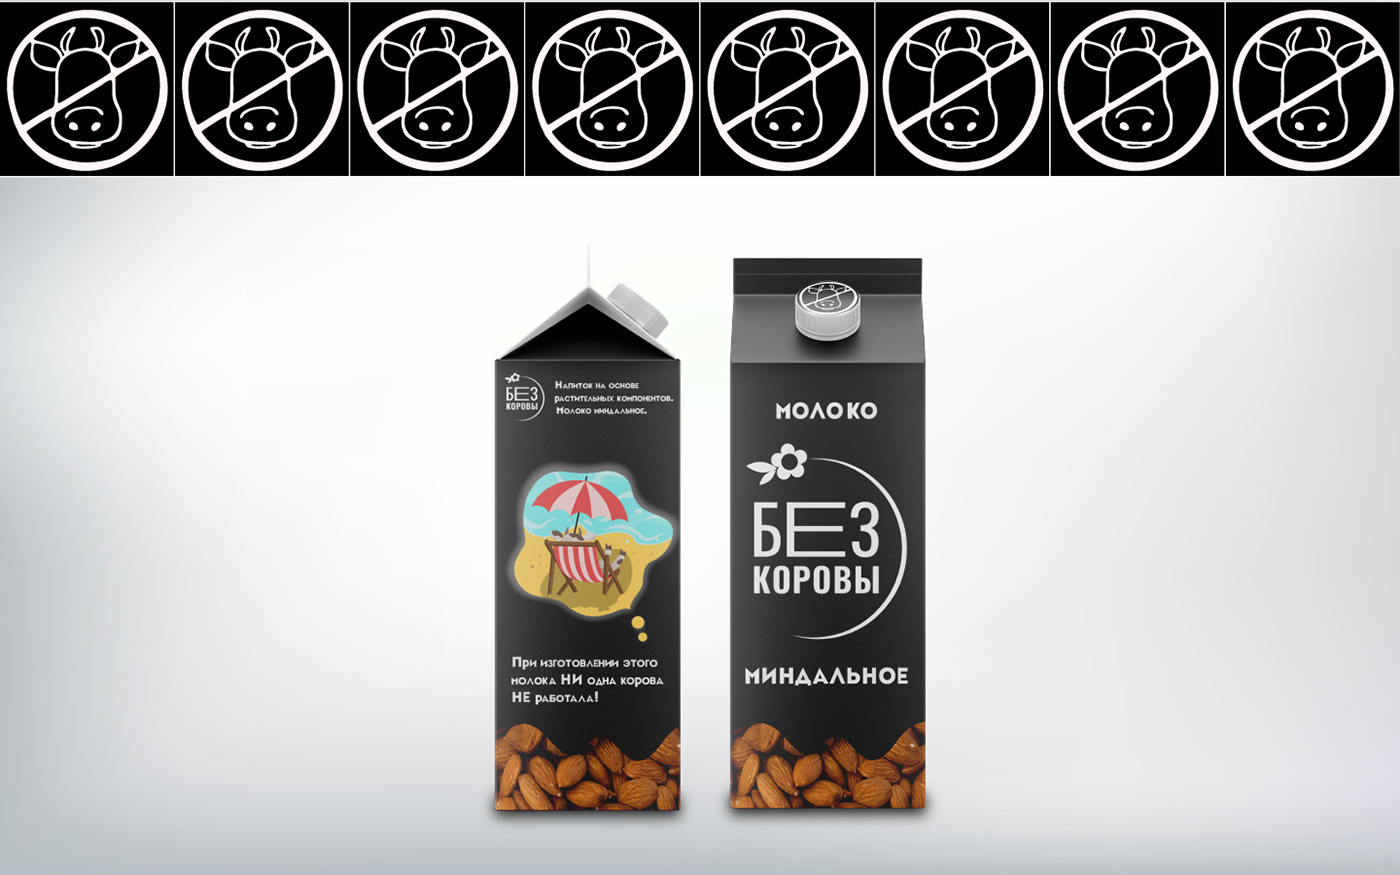 Logo Design milk packaging design visual identity графический дизайн дизайн упаковки логотип молоко упаковка фирменный стиль